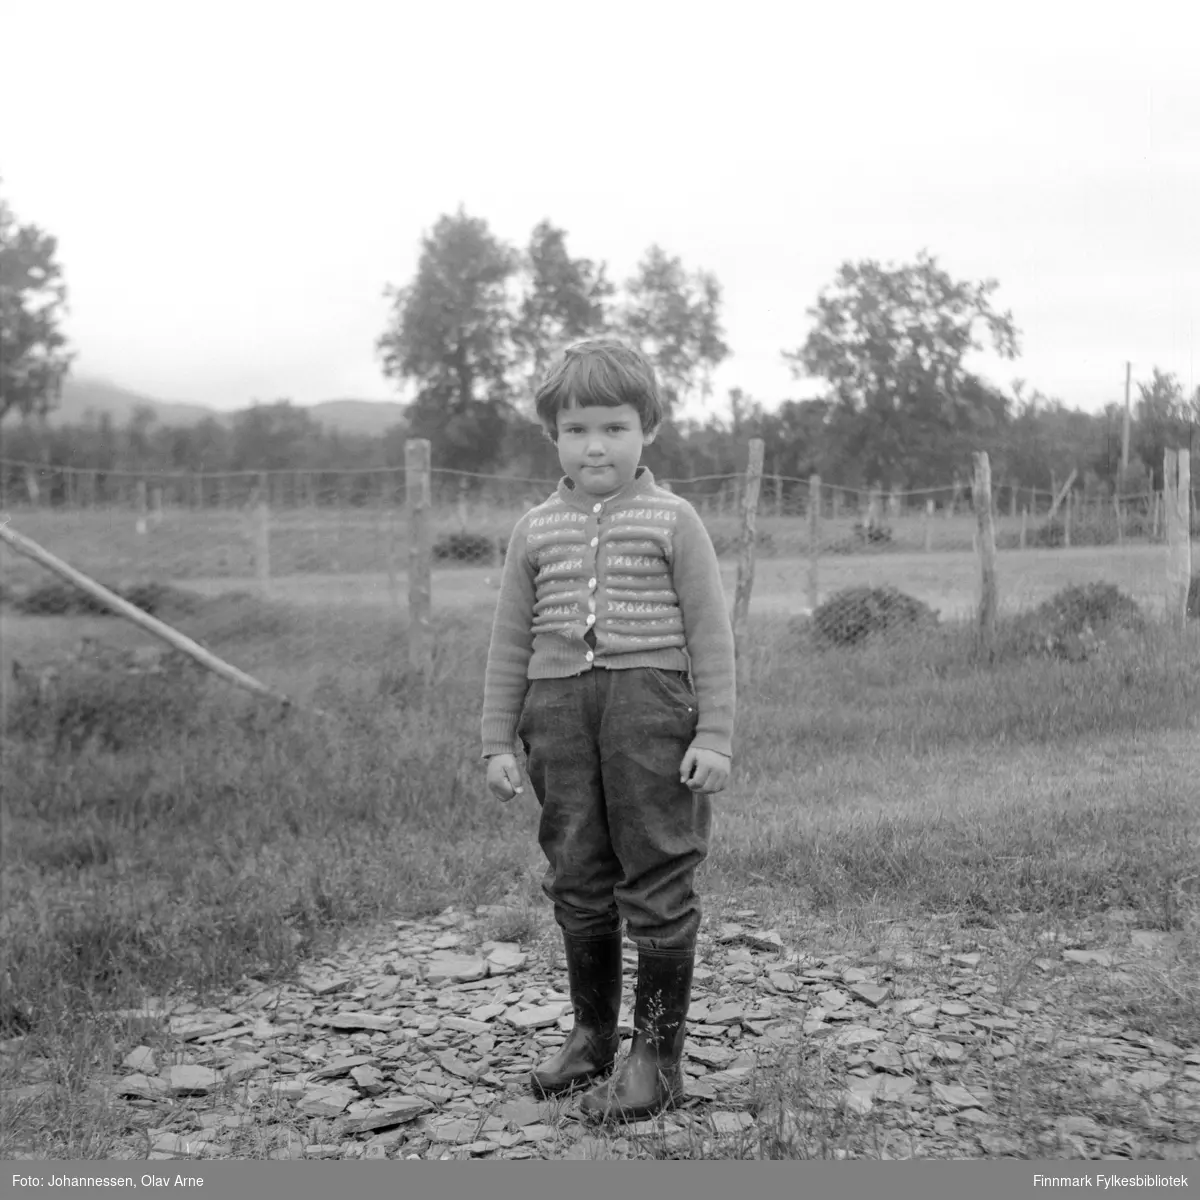 Foto av ukjent barn på ukjent sted

Foto trolig tatt på  1960/70-tallet